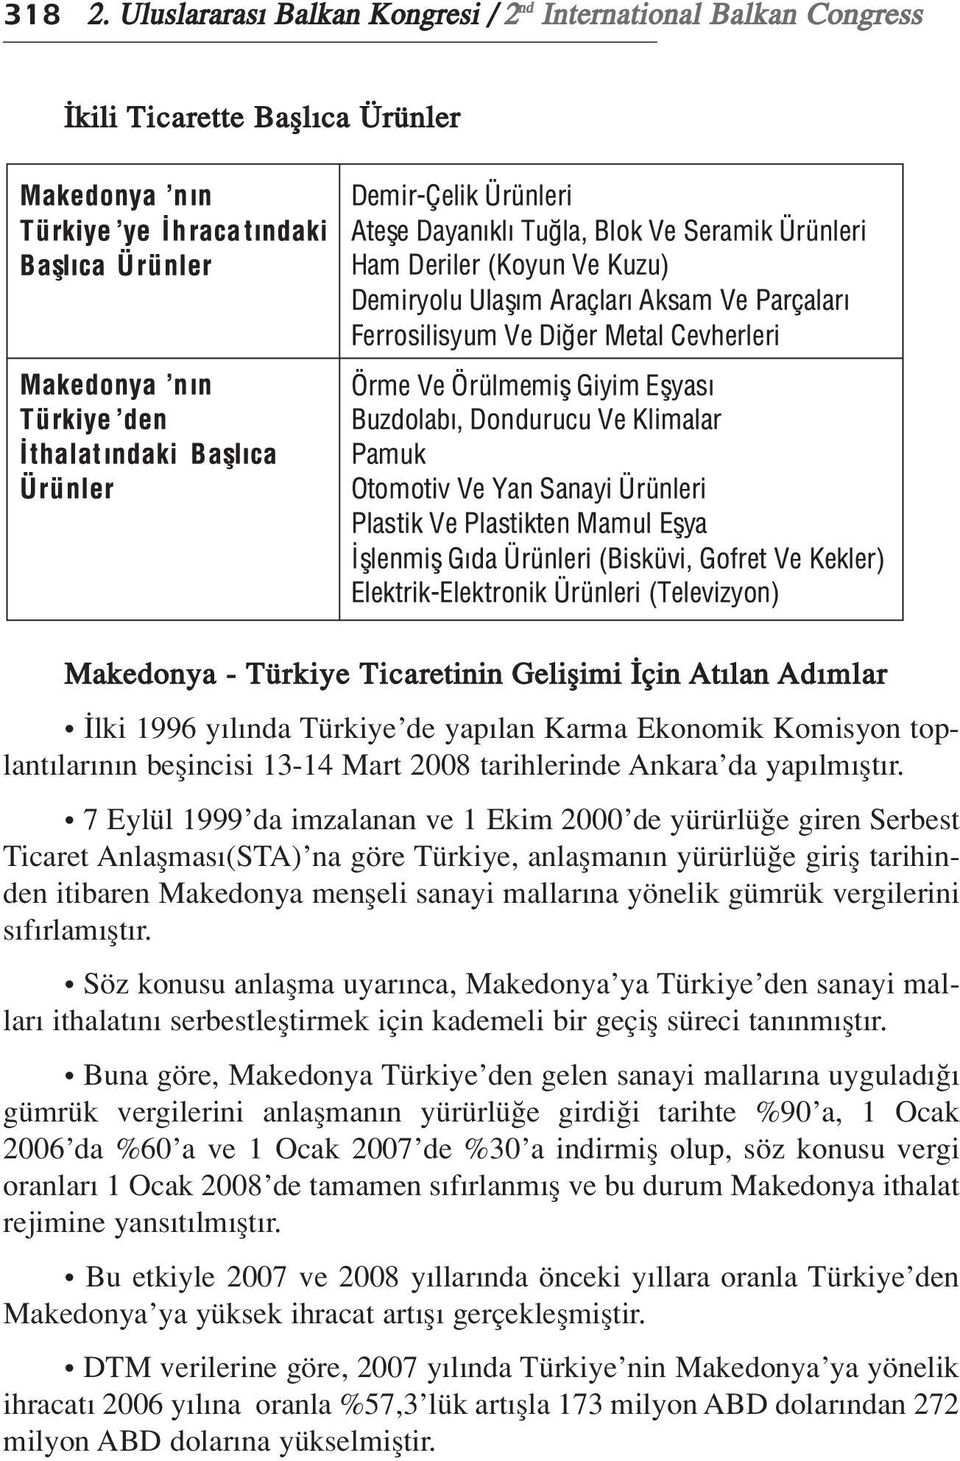 Karma Ekonomik Komisyon toplant lar n n beflincisi 13-14 Mart 2008 tarihlerinde Ankara da yap lm flt r.